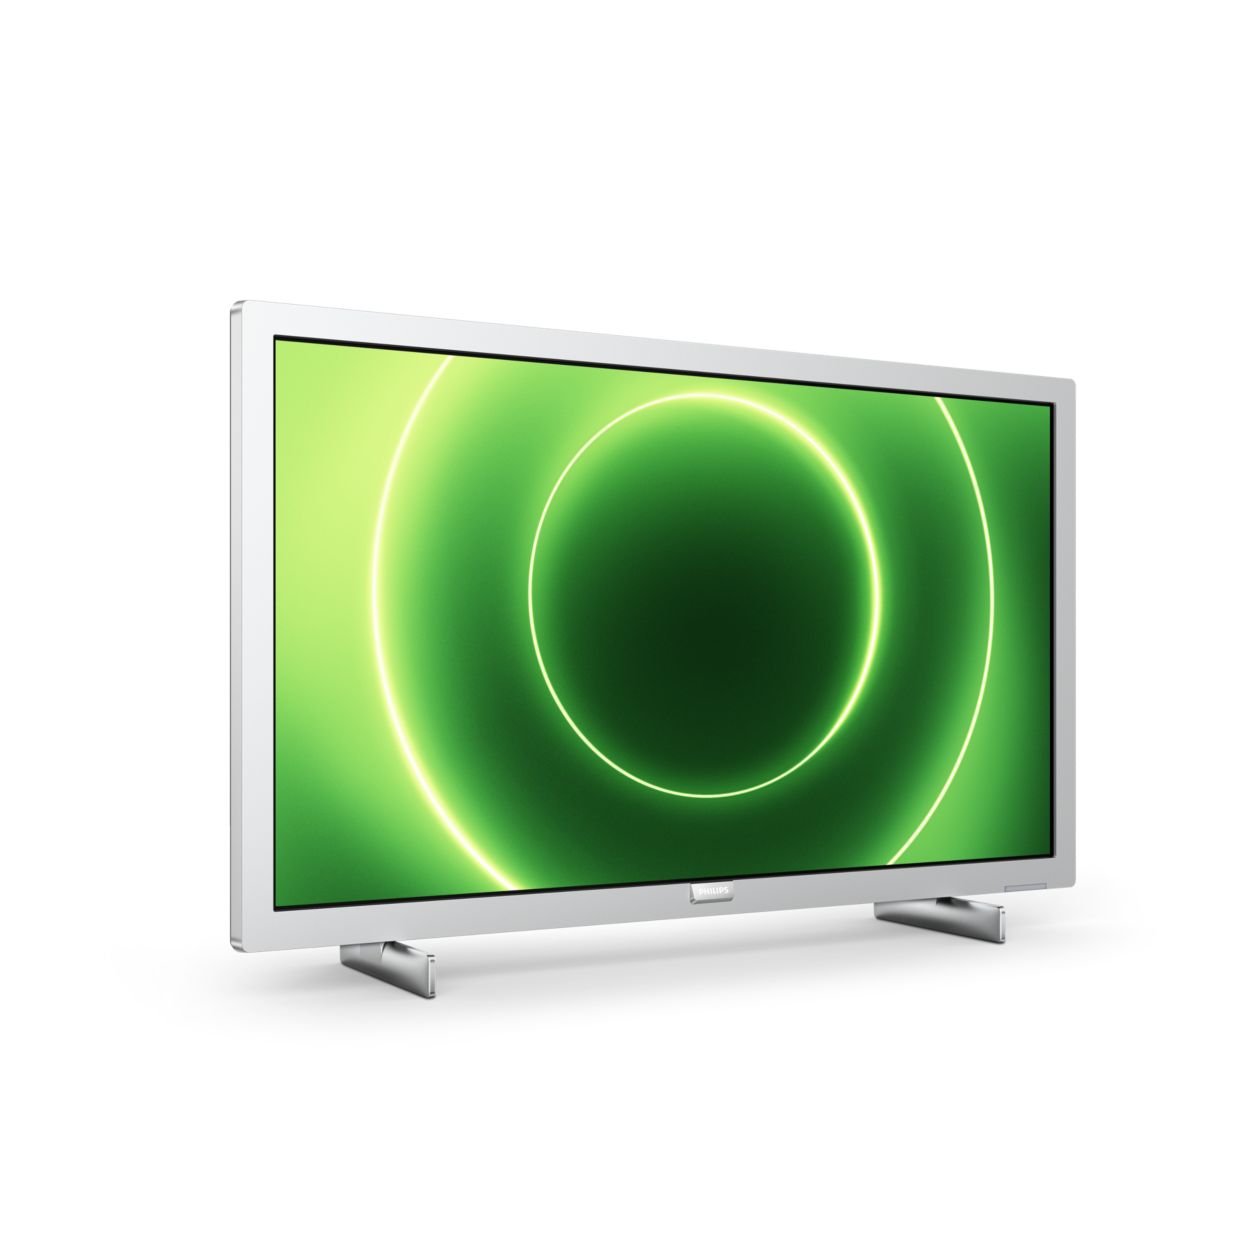 LED Smart TV LED FHD 24PFS6855/12